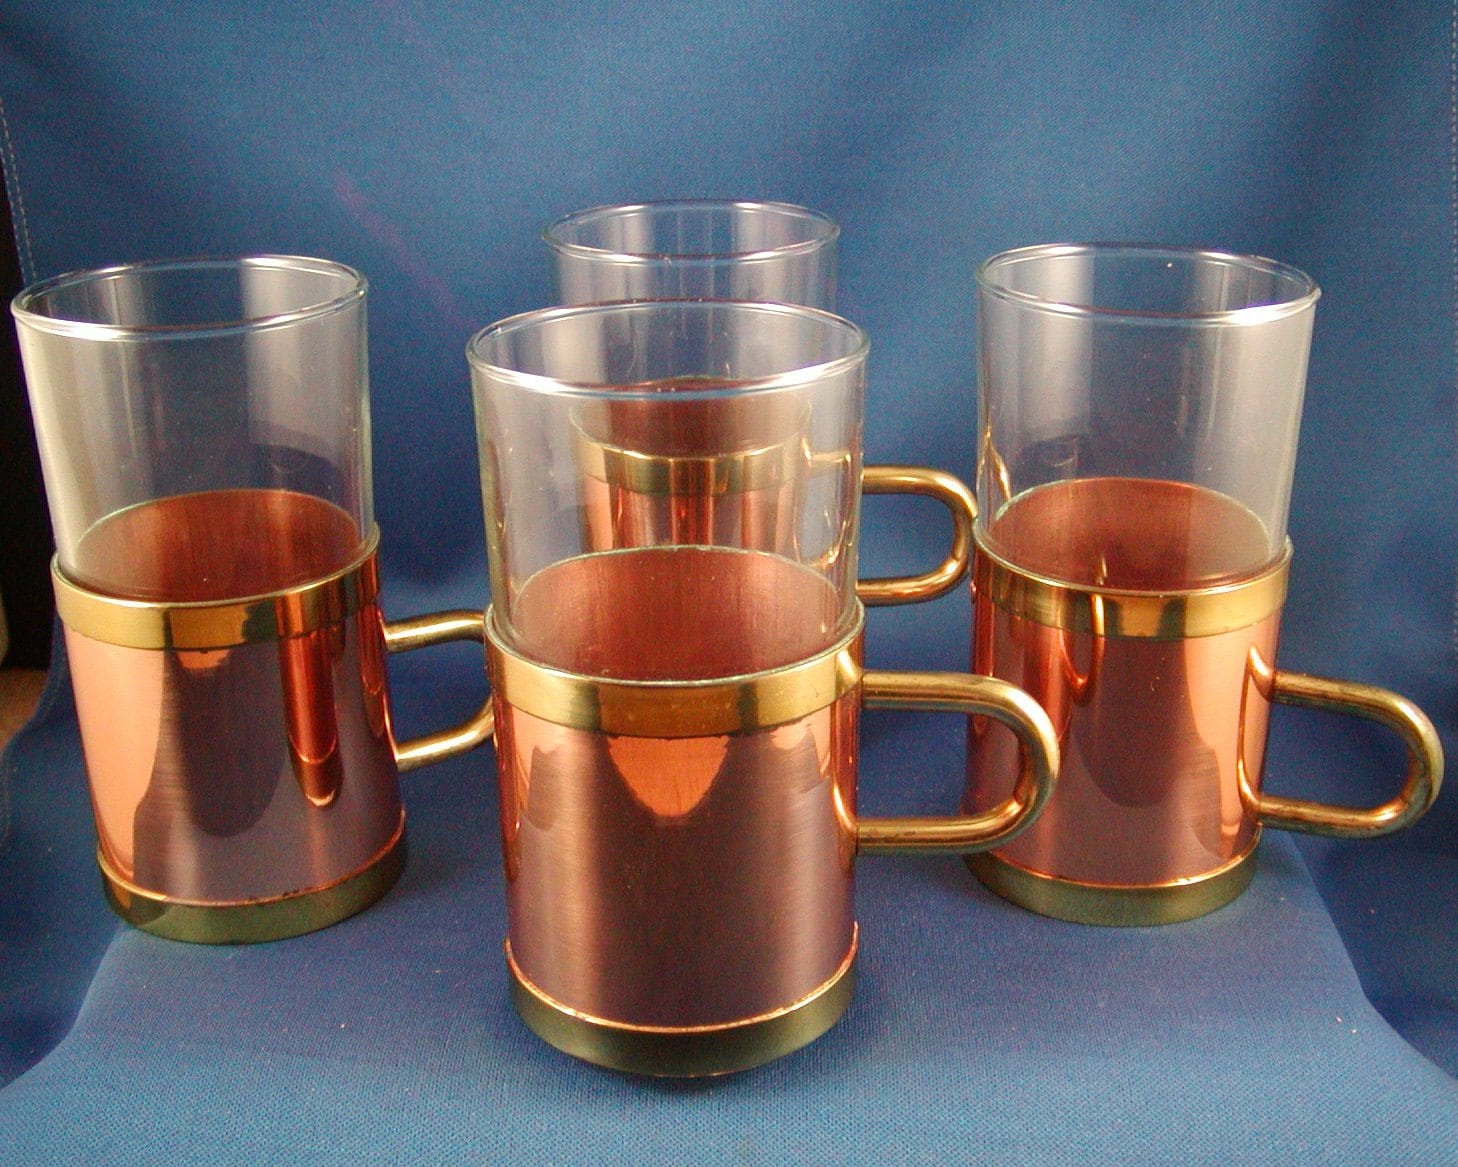 Glass mug with metal holder